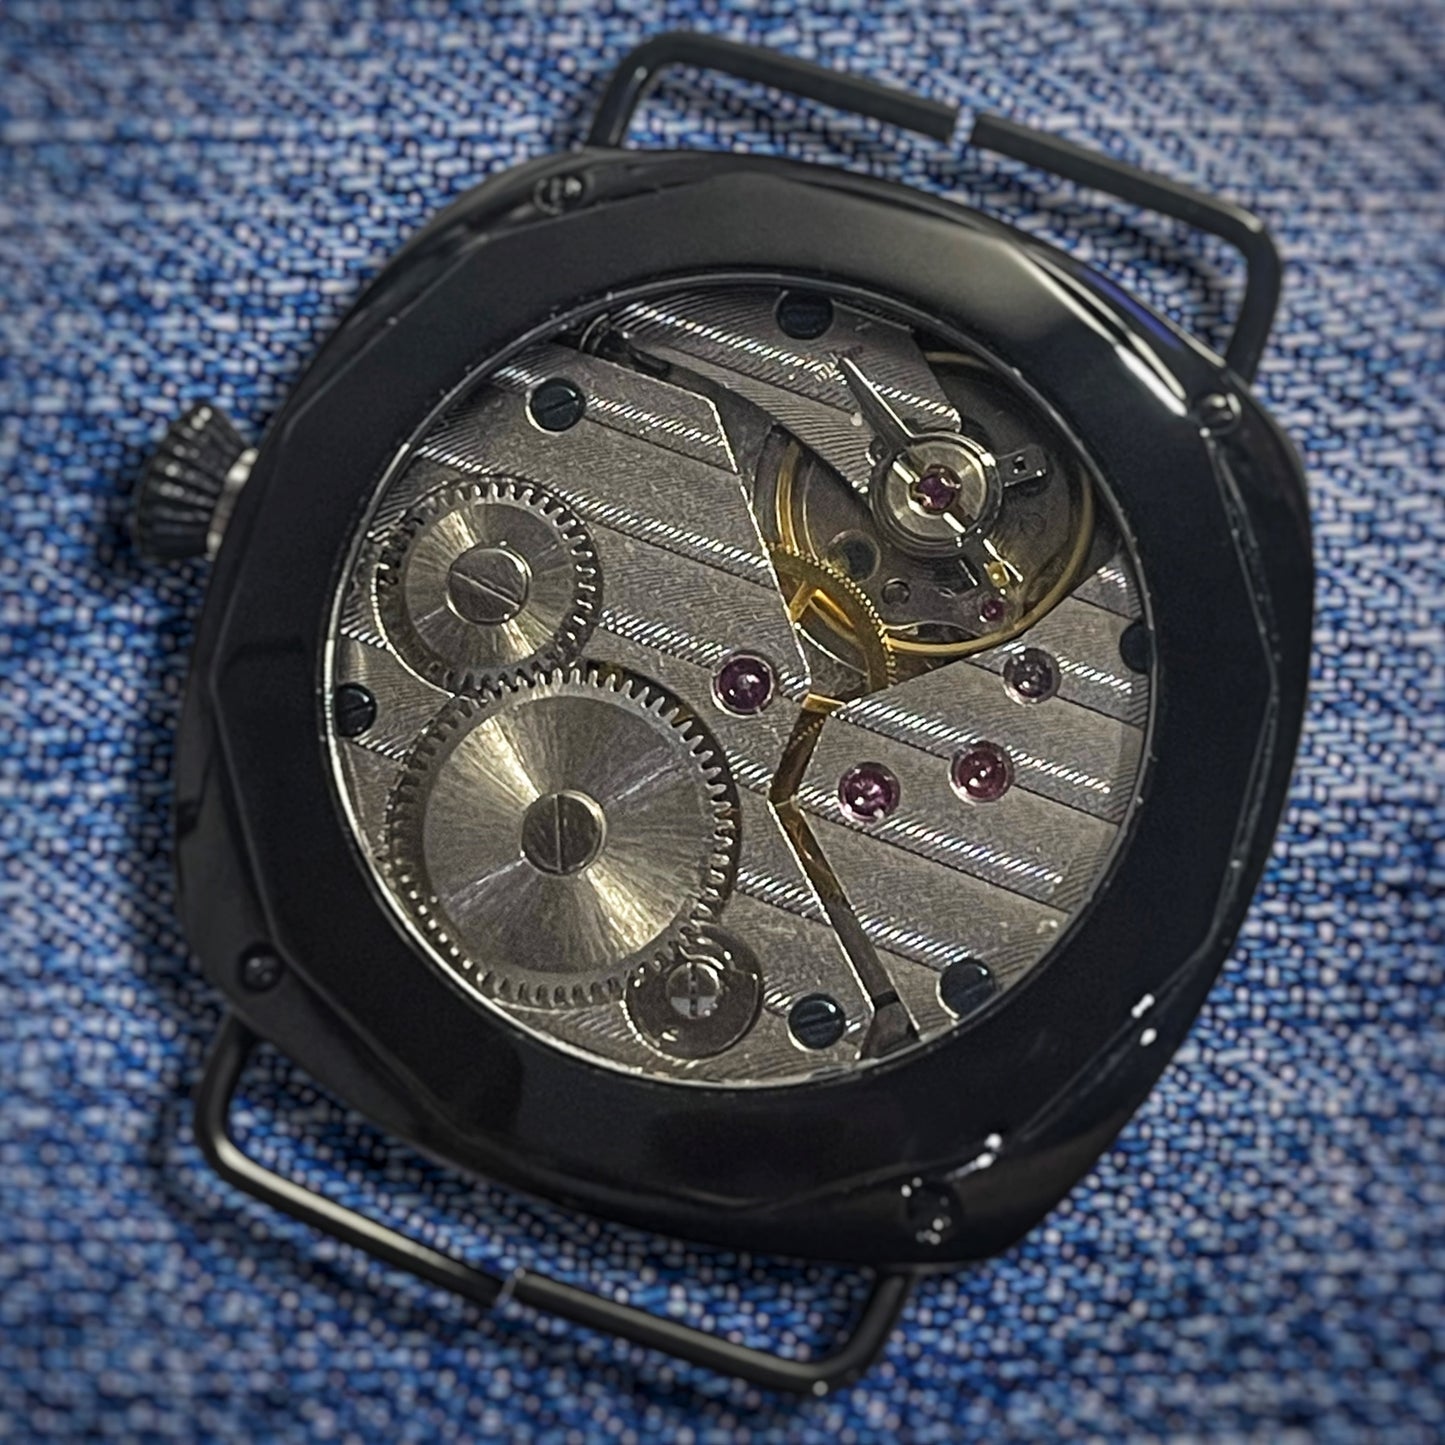 The Gentleman's Timepiece